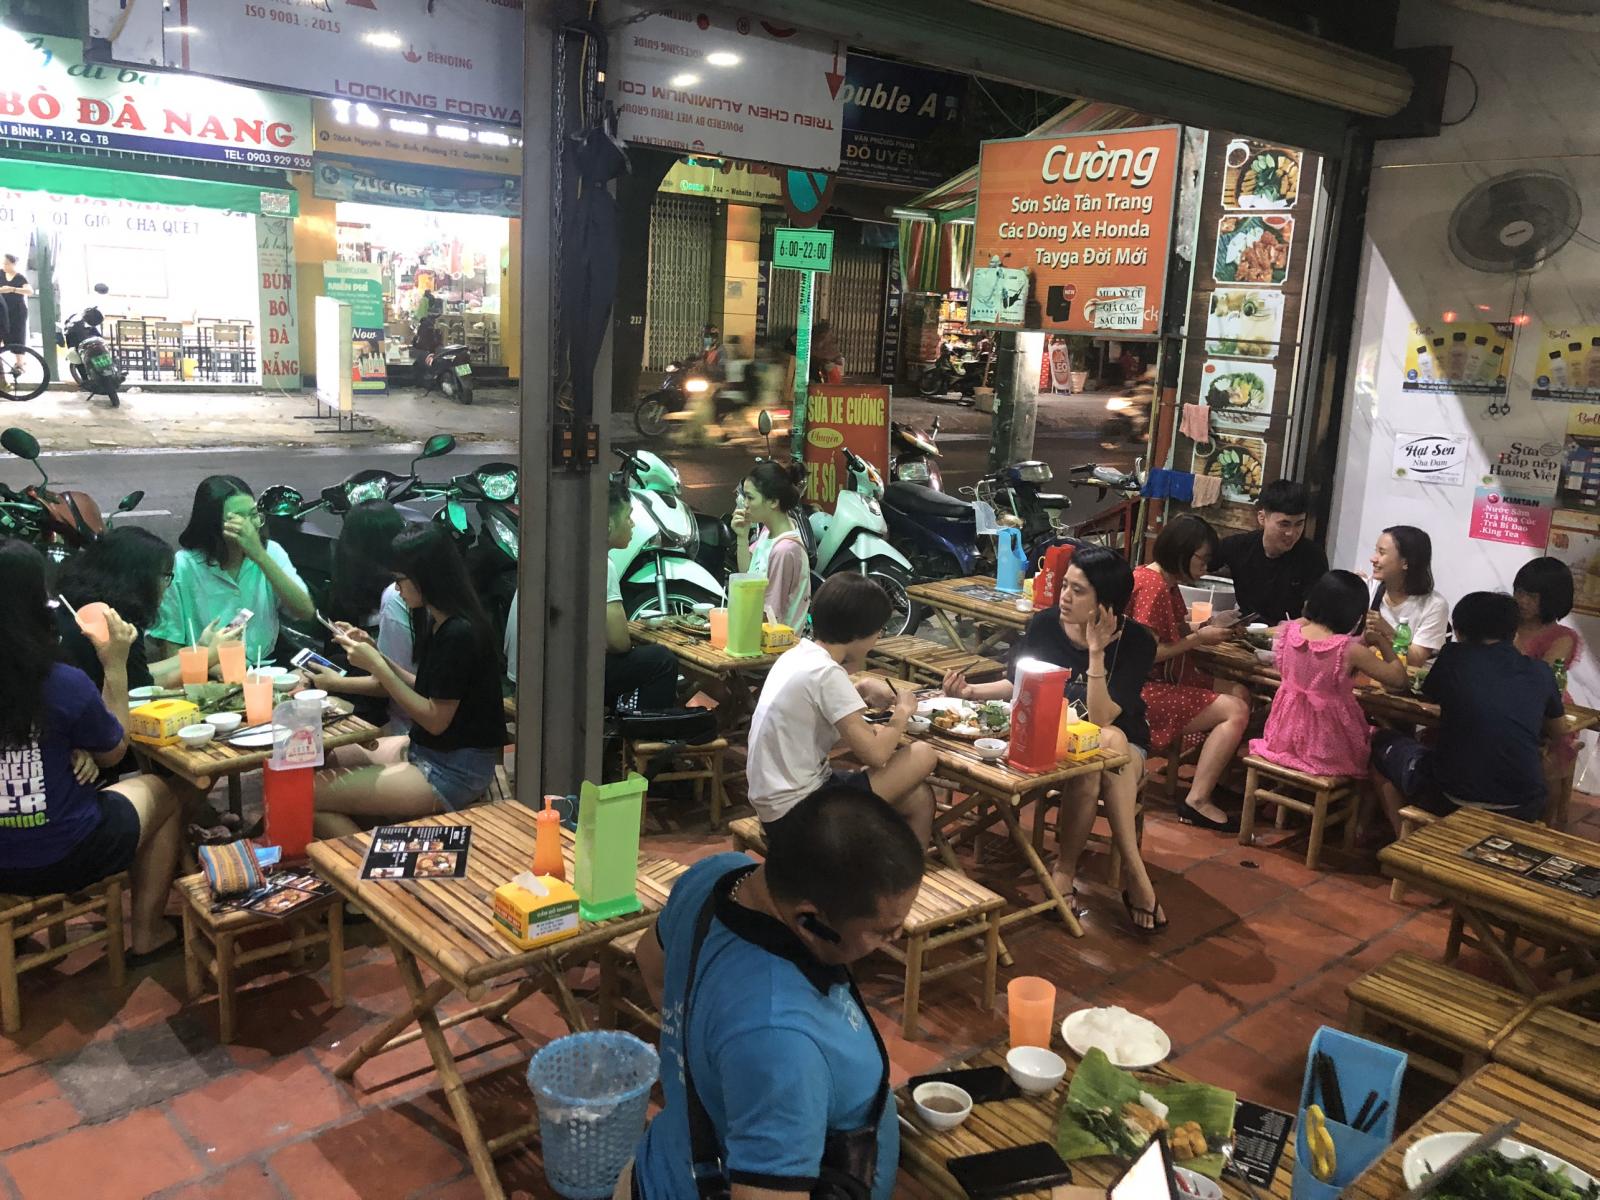 Chính chủ cần sang nhượng quán Bún đậu mắm tôm tại 411 Nguyễn Thái Bình - phường 12- Quận Tân Bình